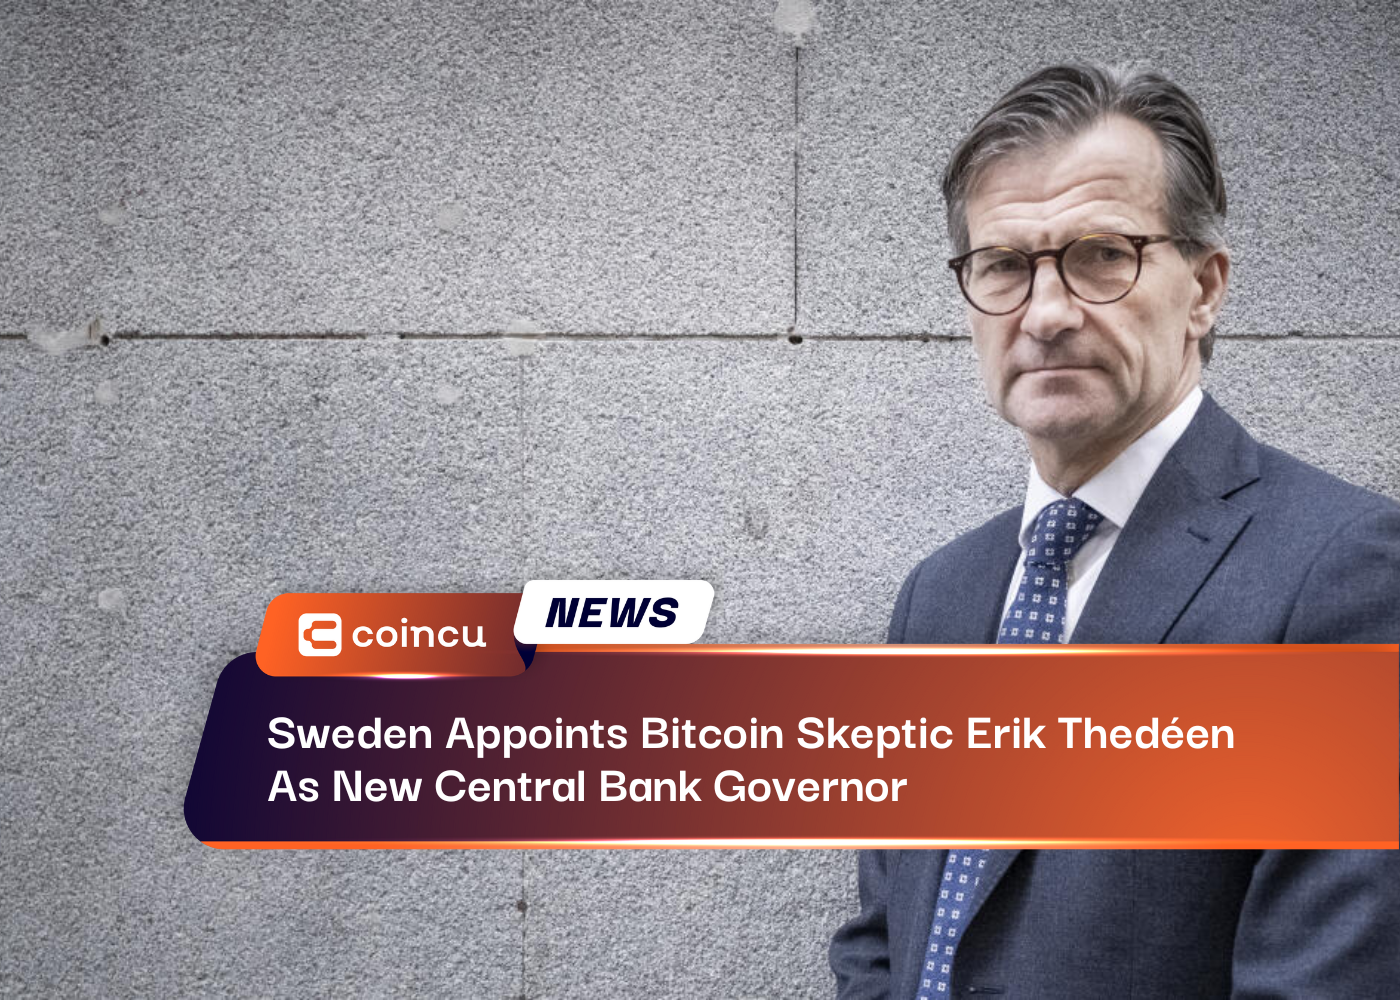 Suécia nomeia Erik Thedéen, cético em relação ao Bitcoin, como novo governador do Banco Central